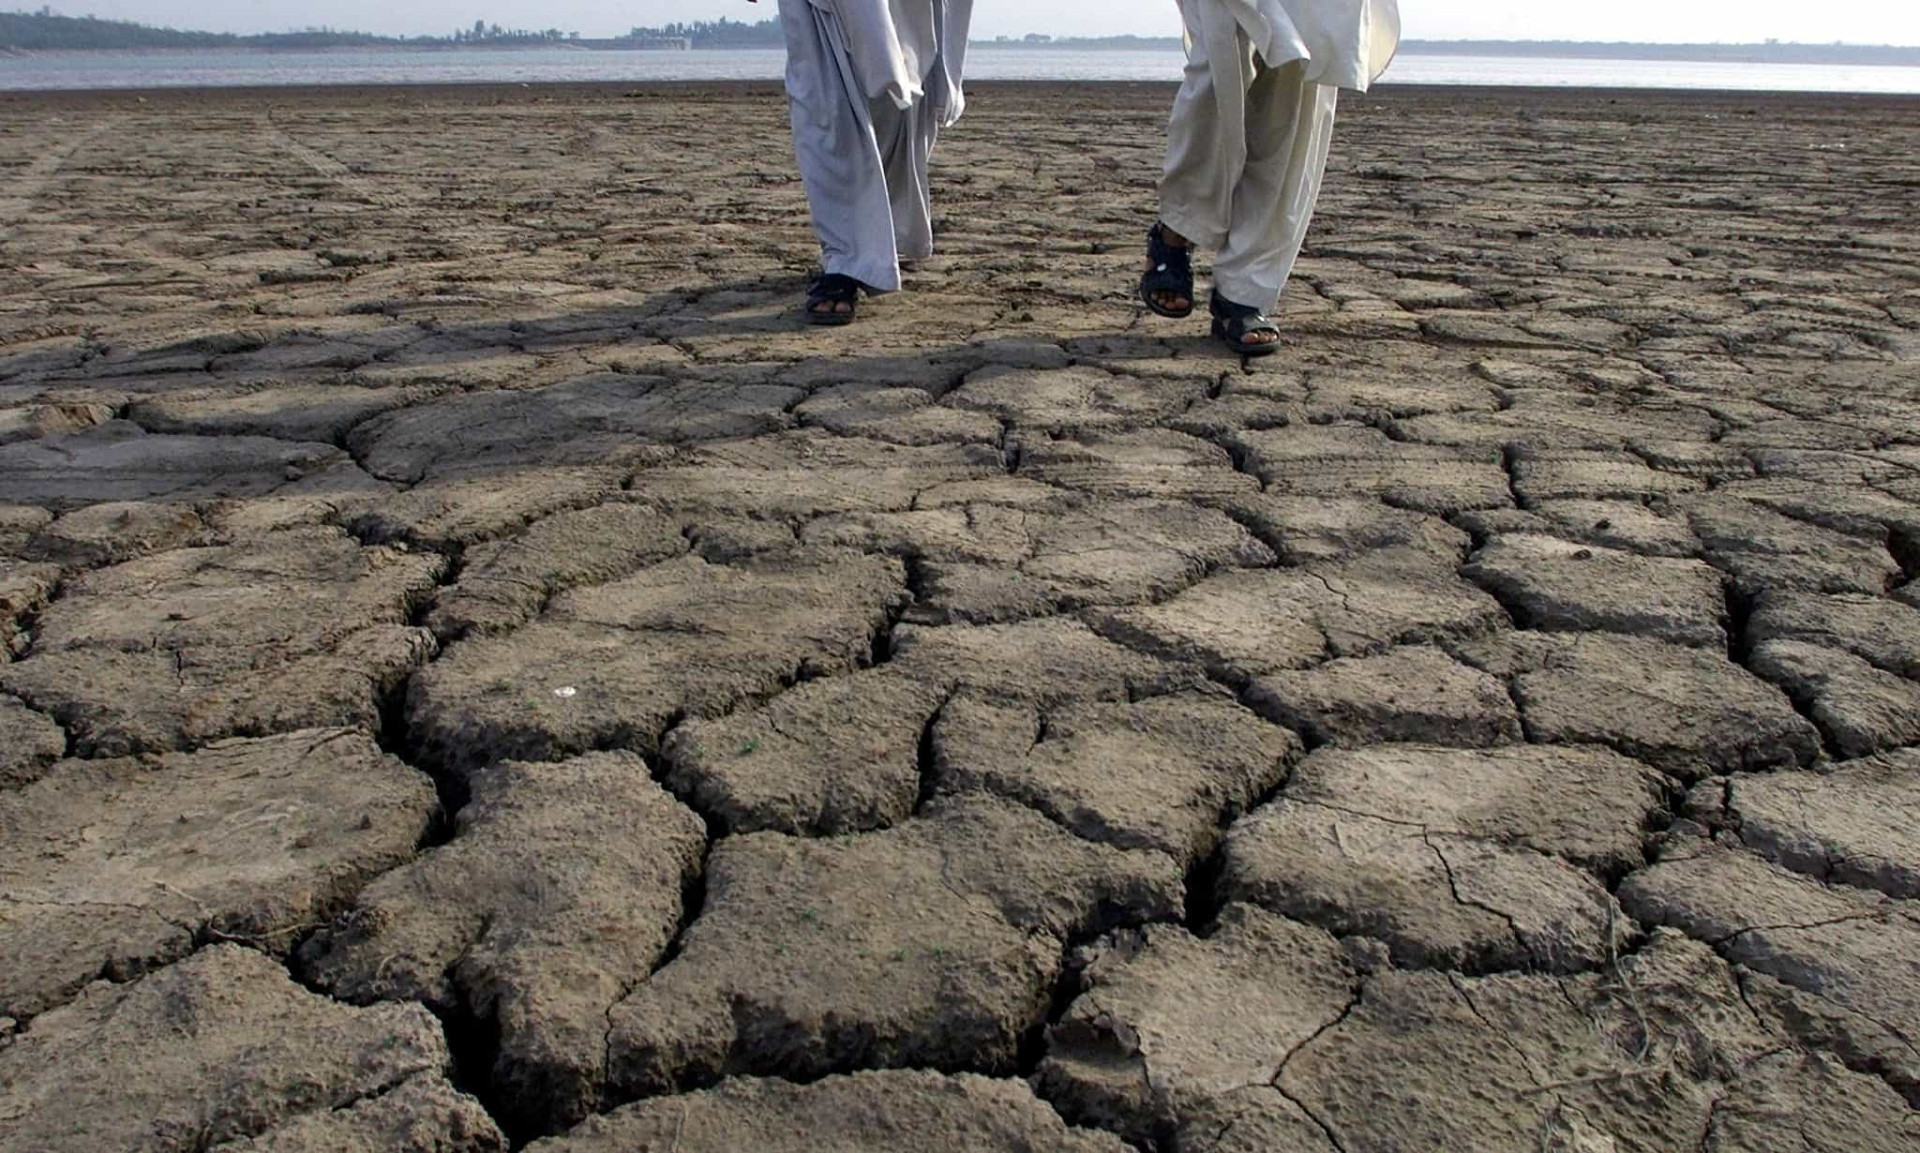 La province du Sindh, au Pakistan, a été touchée par une vague de chaleur en 2010. On a recensé une température record nationale de 54°C.<p><a href="https://www.msn.com/fr-fr/community/channel/vid-7xx8mnucu55yw63we9va2gwr7uihbxwc68fxqp25x6tg4ftibpra?cvid=94631541bc0f4f89bfd59158d696ad7e">Suivez-nous et accédez tous les jours à du contenu exclusif</a></p>